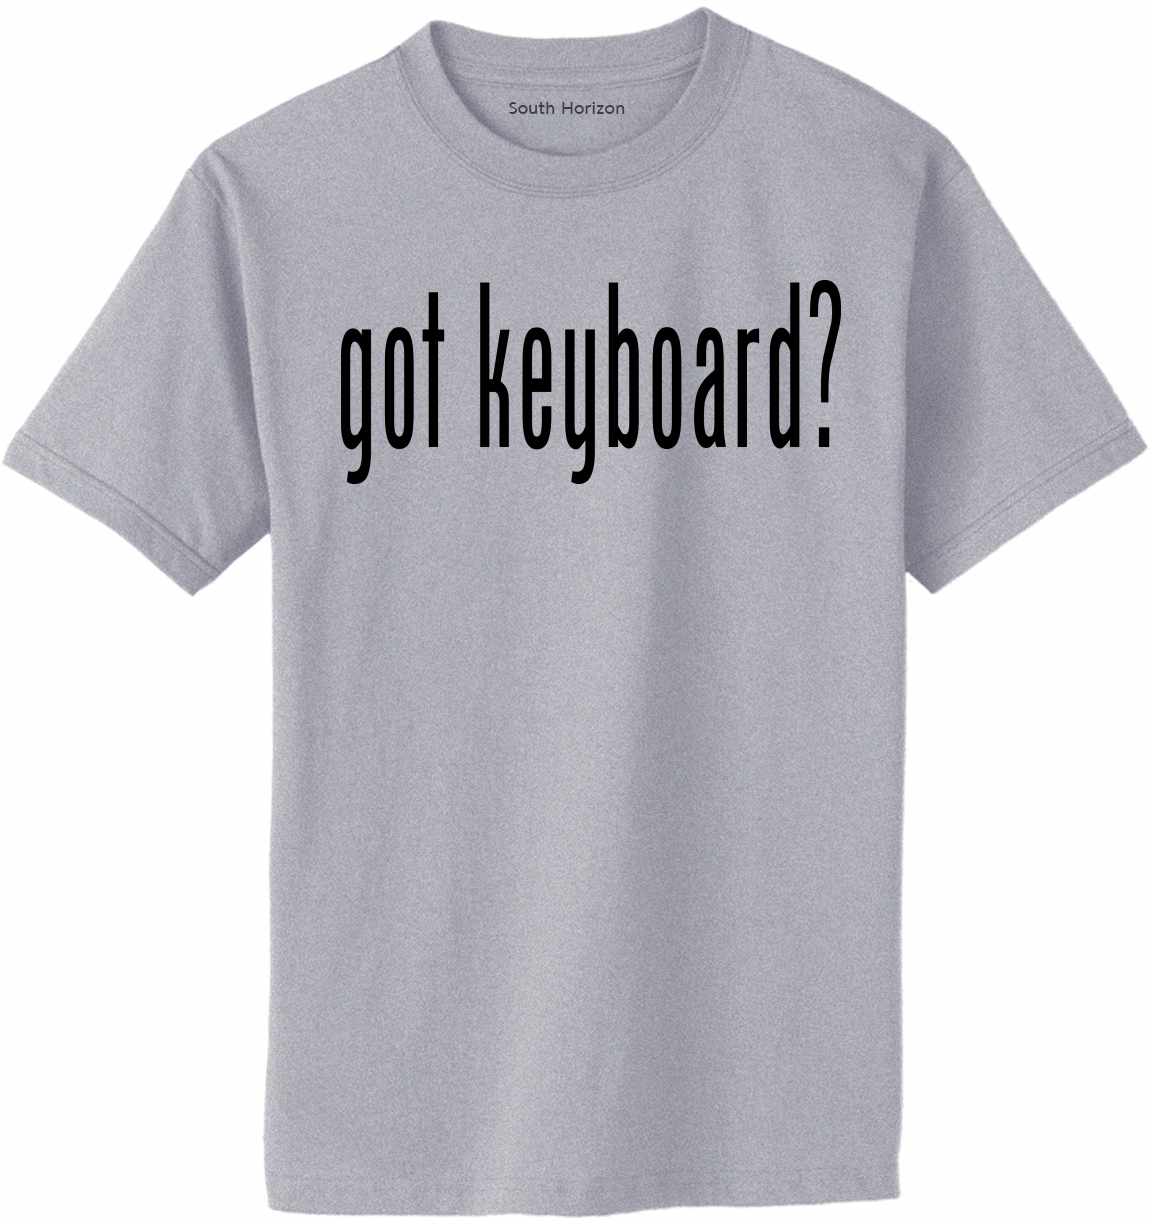 Got Keyboard? Adult T-Shirt